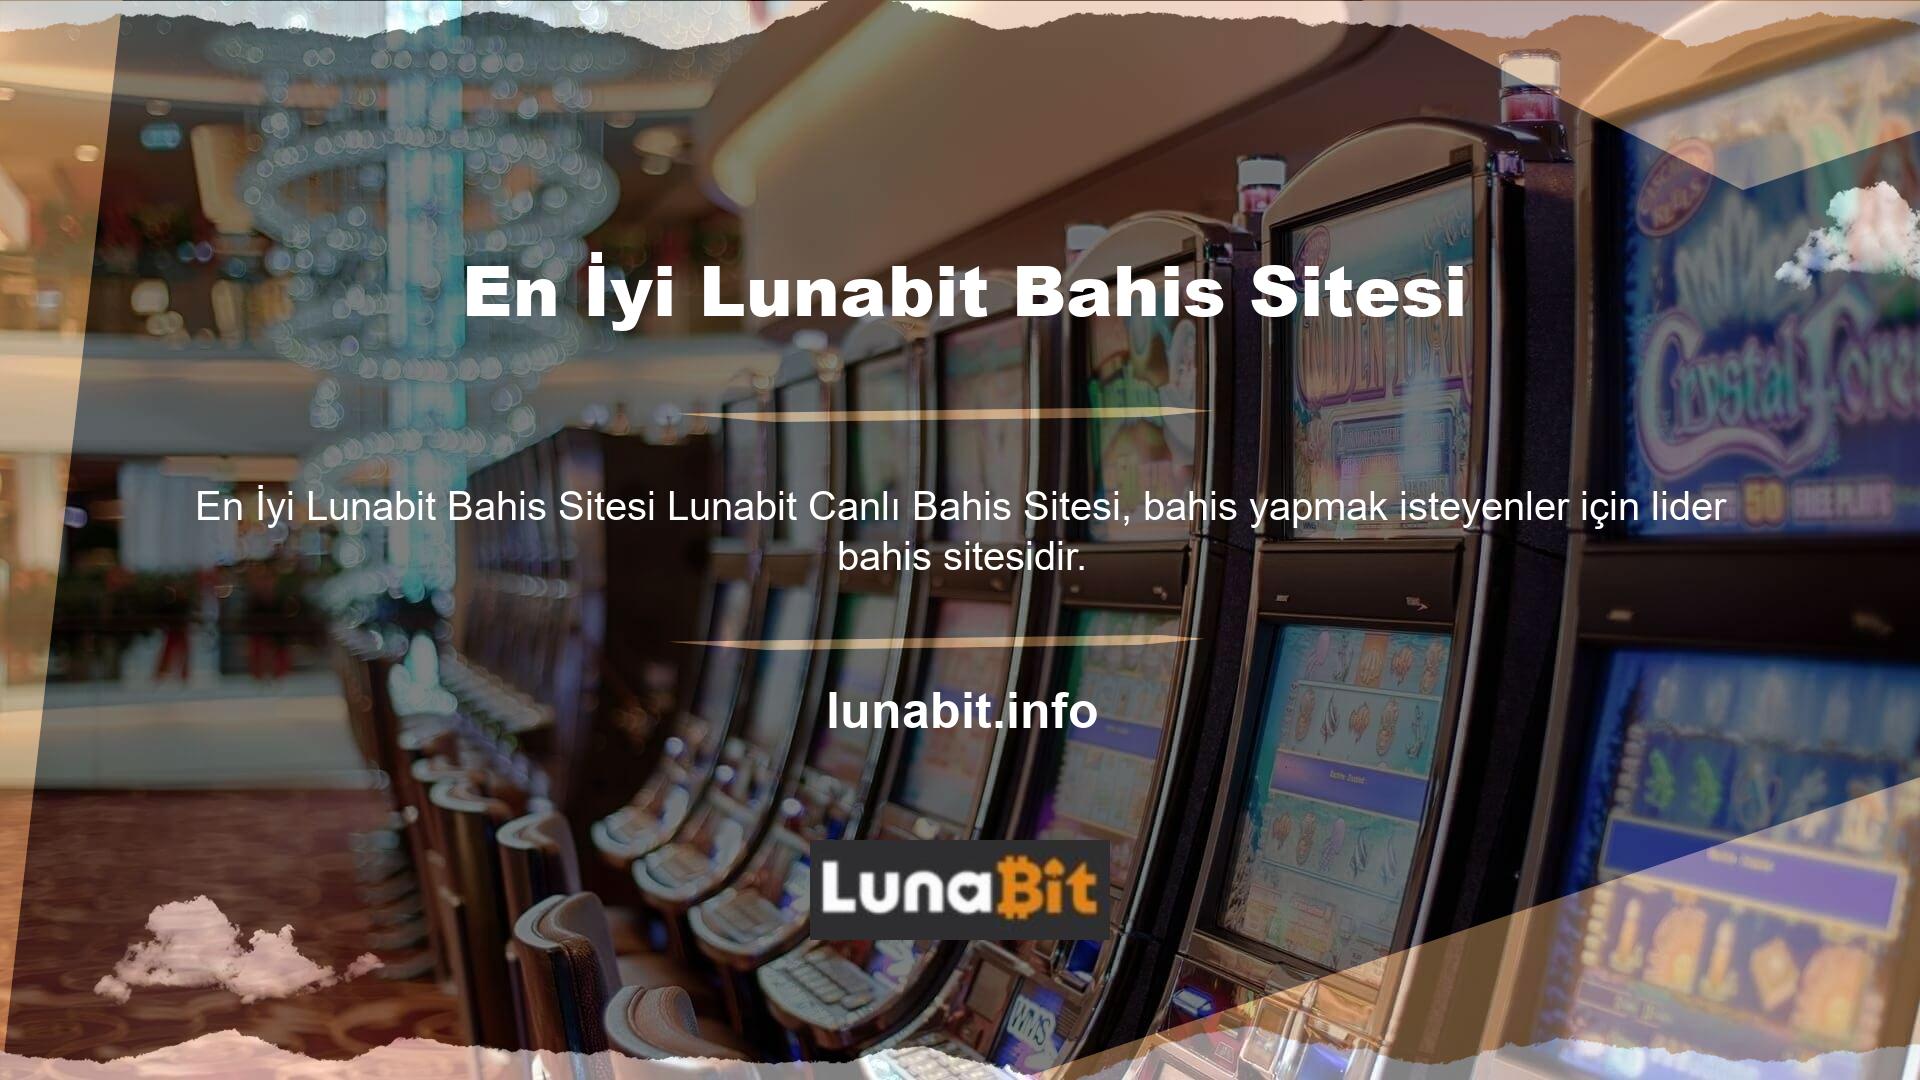 Canlı maç oranlarını gösteren Lunabit web sitesi, aradığınız bahis sitesi olabilir